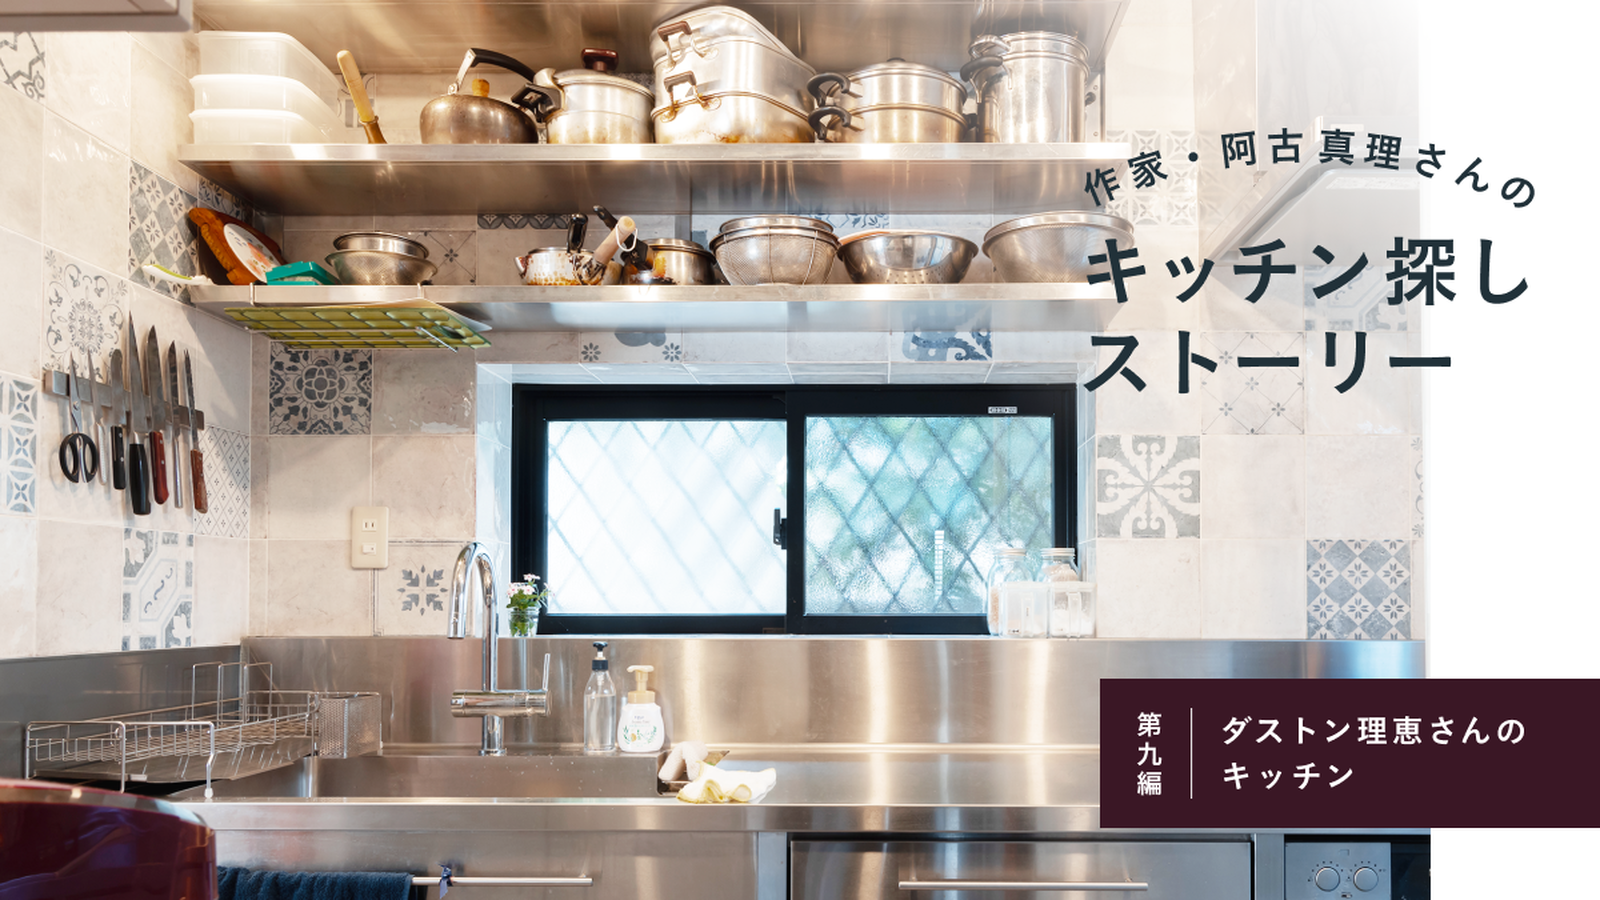 作家・阿古真理さんのキッチン探しストーリー　第九編「ダストン理恵さんのキッチン」